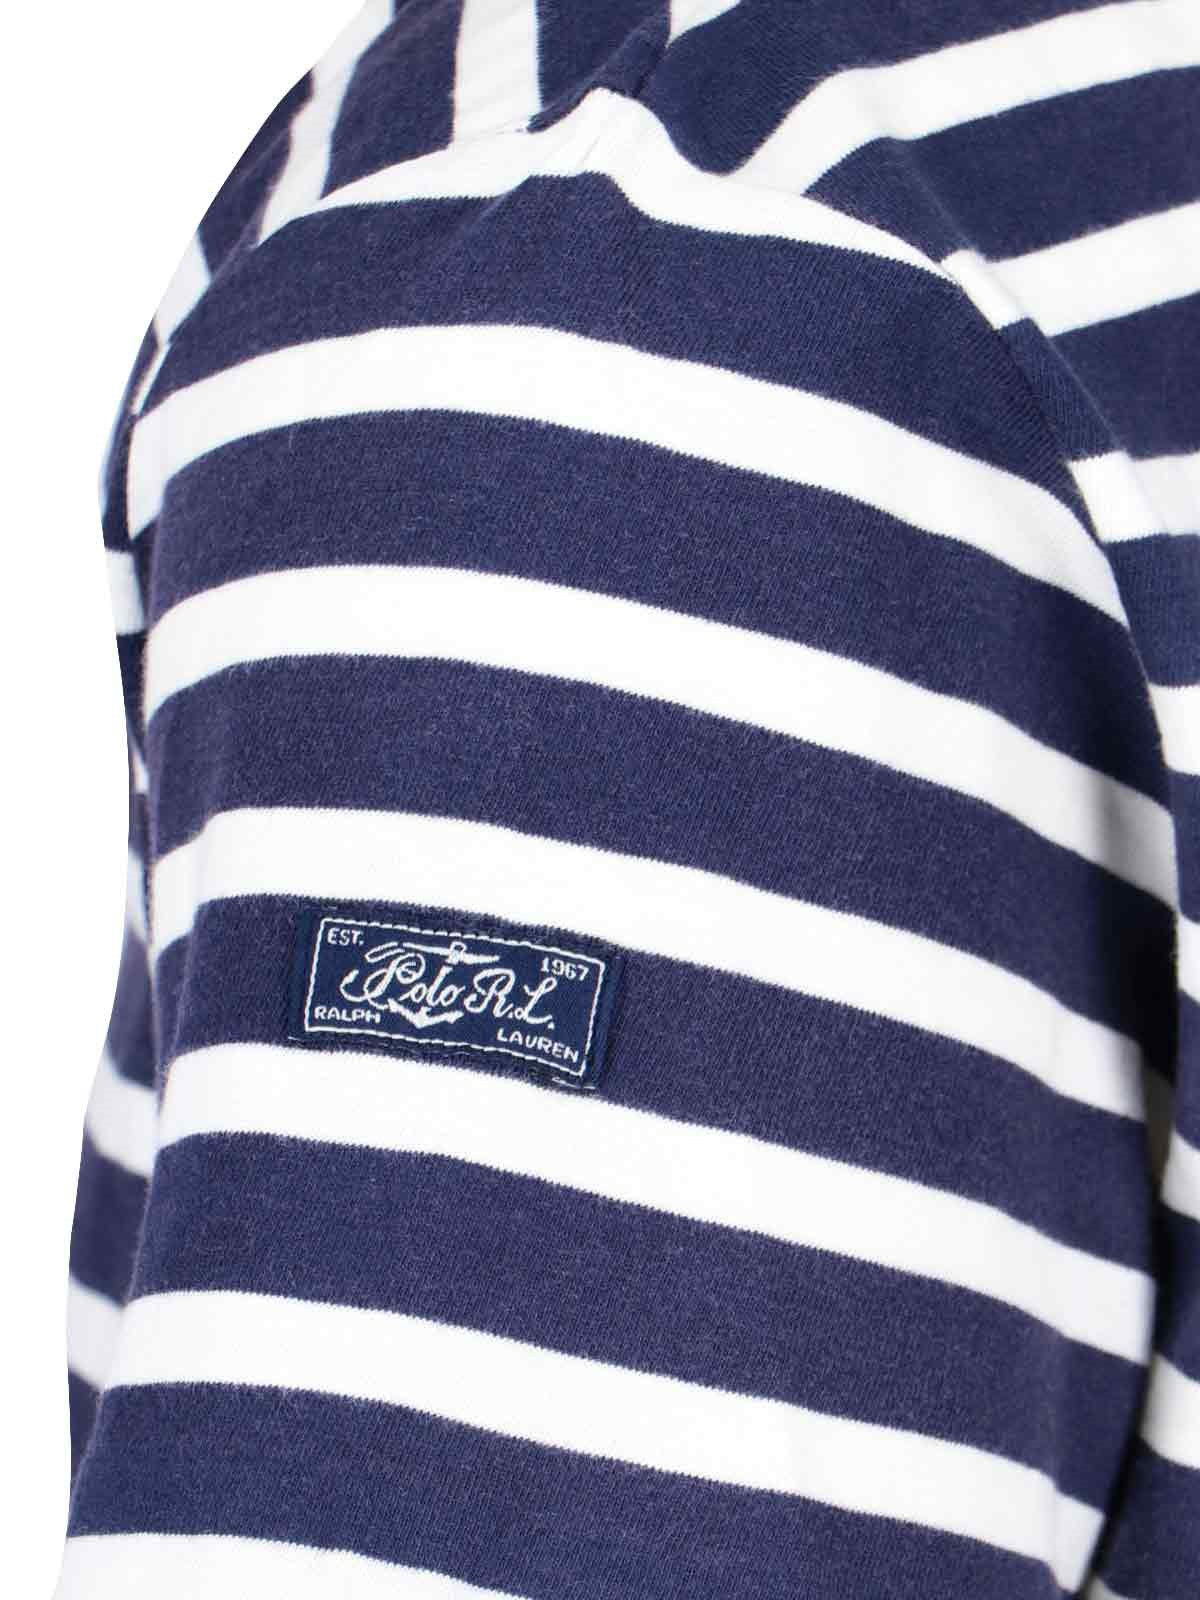 Polo Ralph Lauren T-Shirt a righe-t-shirt-Polo Ralph Lauren-T-shirt a righe Polo Ralph Lauren, in cotone blu, motivo righe bianche, girocollo, maniche corte, etichetta logo manica, tasca applicata petto, orlo dritto.-Dresso